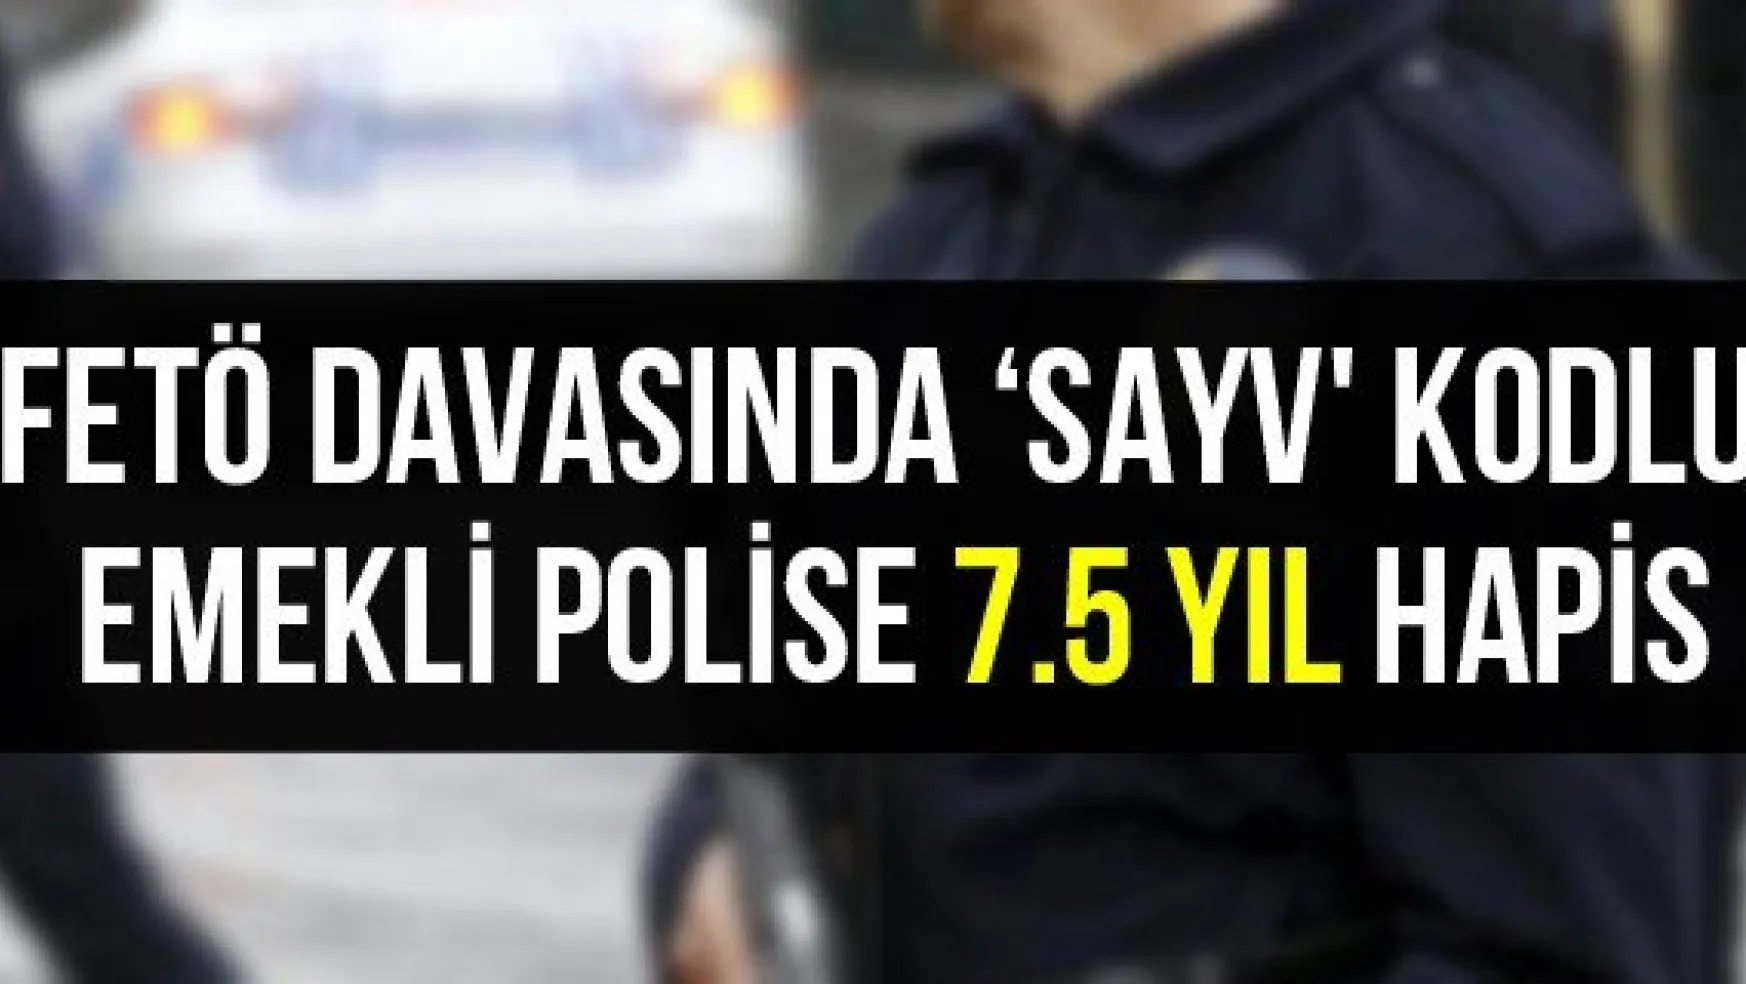 FETÖ davasında 'SAYV' kodlu emekli polise 7.5 yıl hapis